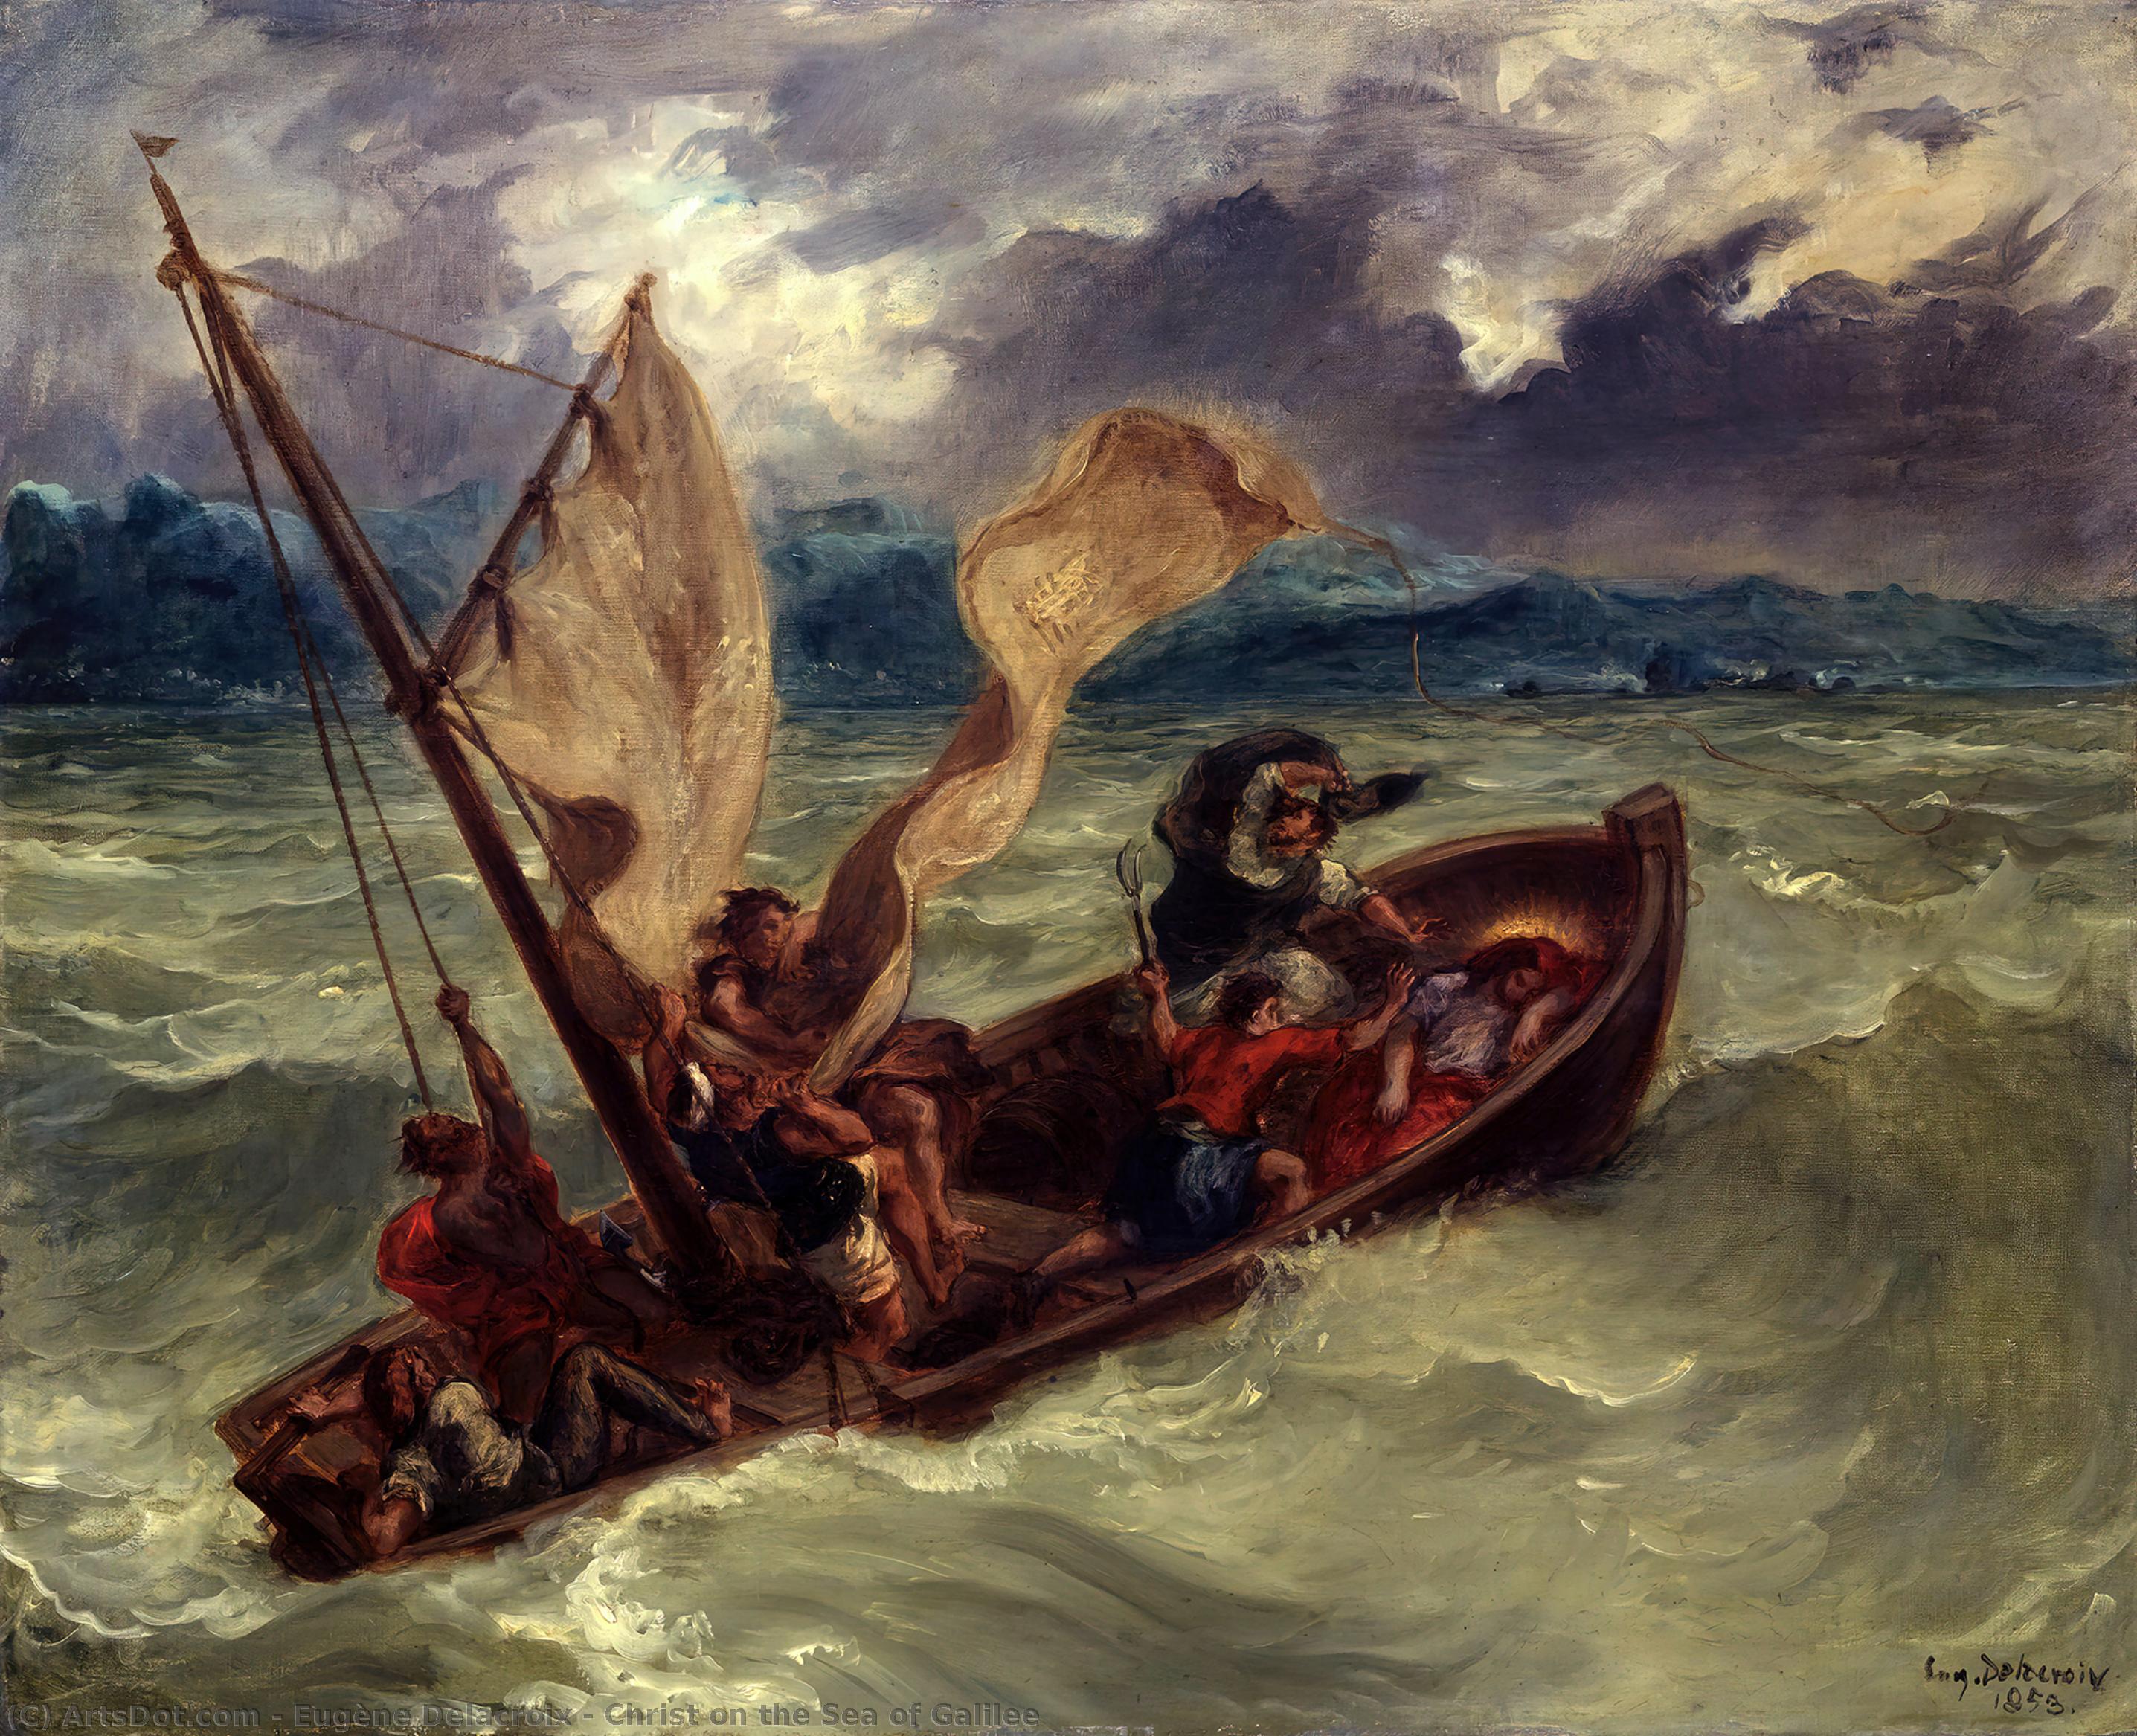 Comprar Reproducciones De Arte Del Museo Cristo en el Mar de Galilea, 1853 de Eugène Delacroix (1798-1863, France) | ArtsDot.com